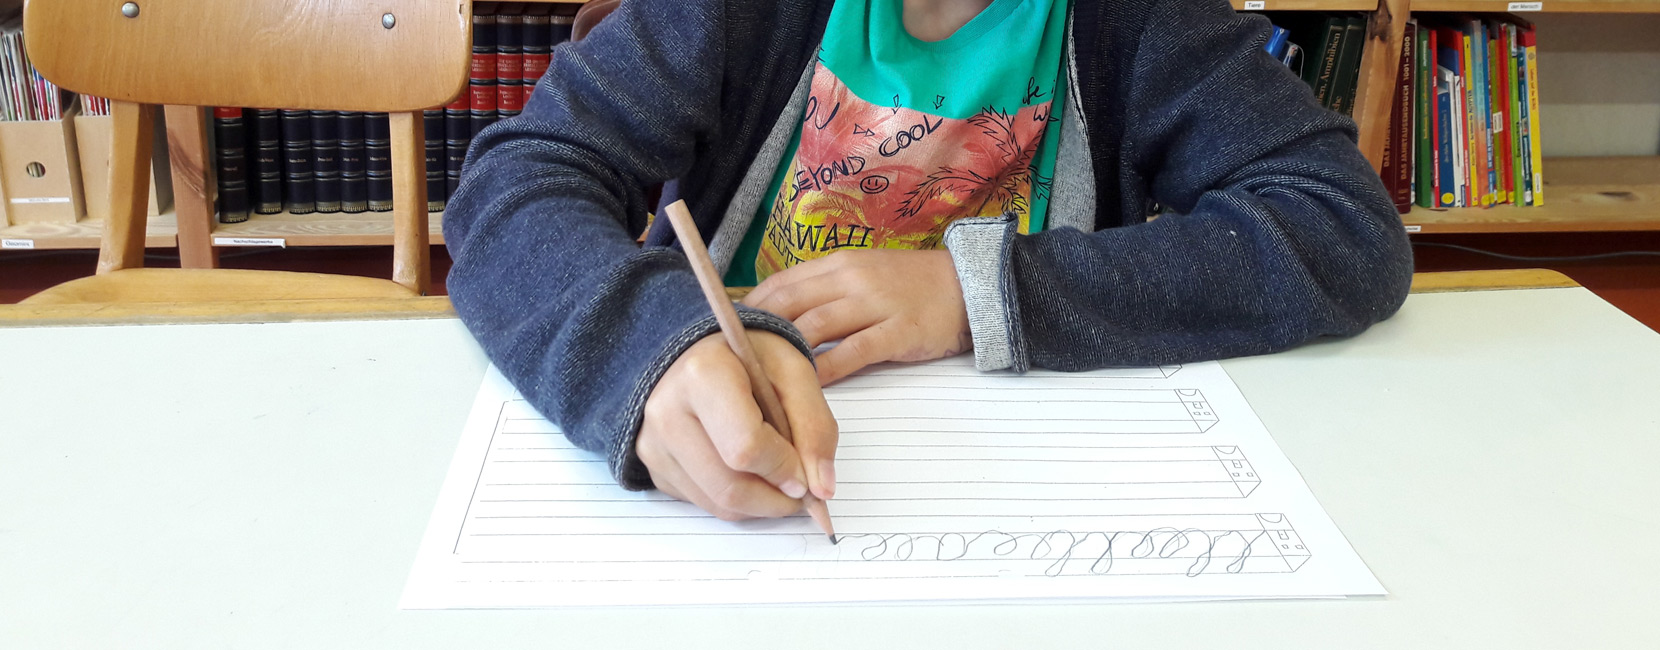 Schreiben in Schreibschrift mit optimaler Stifthaltung